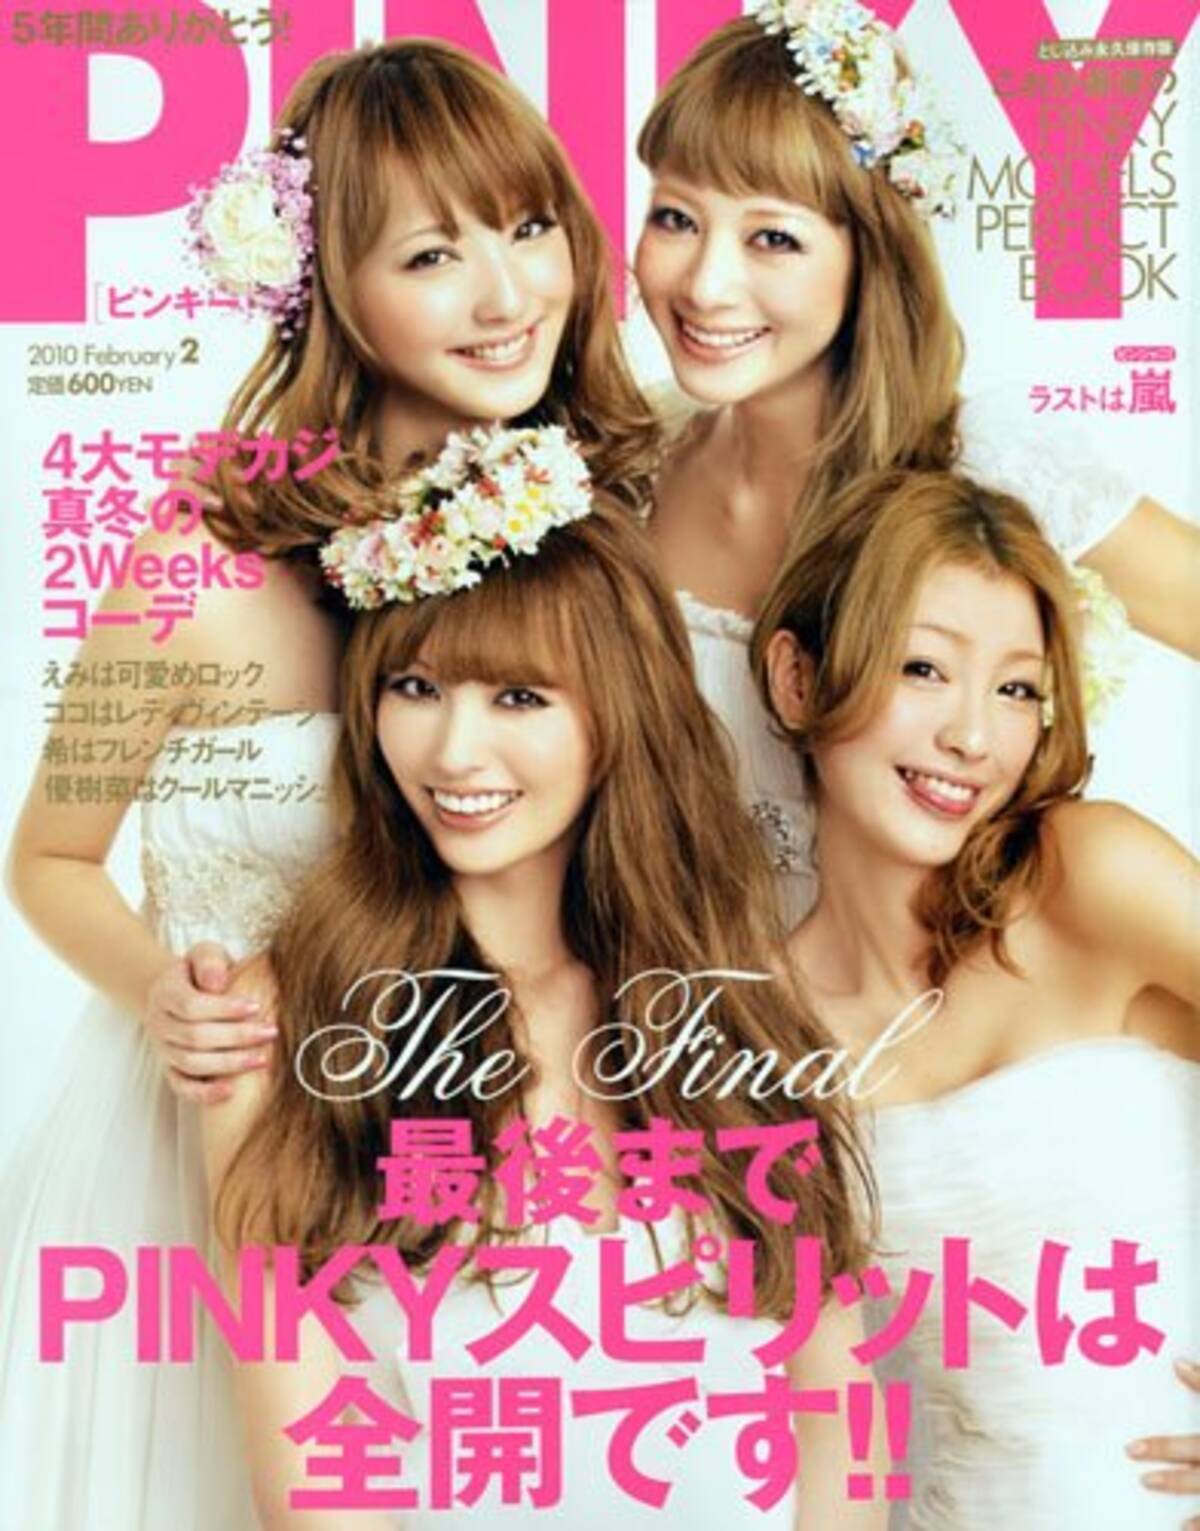 えみちぃに木下優樹菜 休刊した女性雑誌 Pinky を振り返る エキサイトニュース